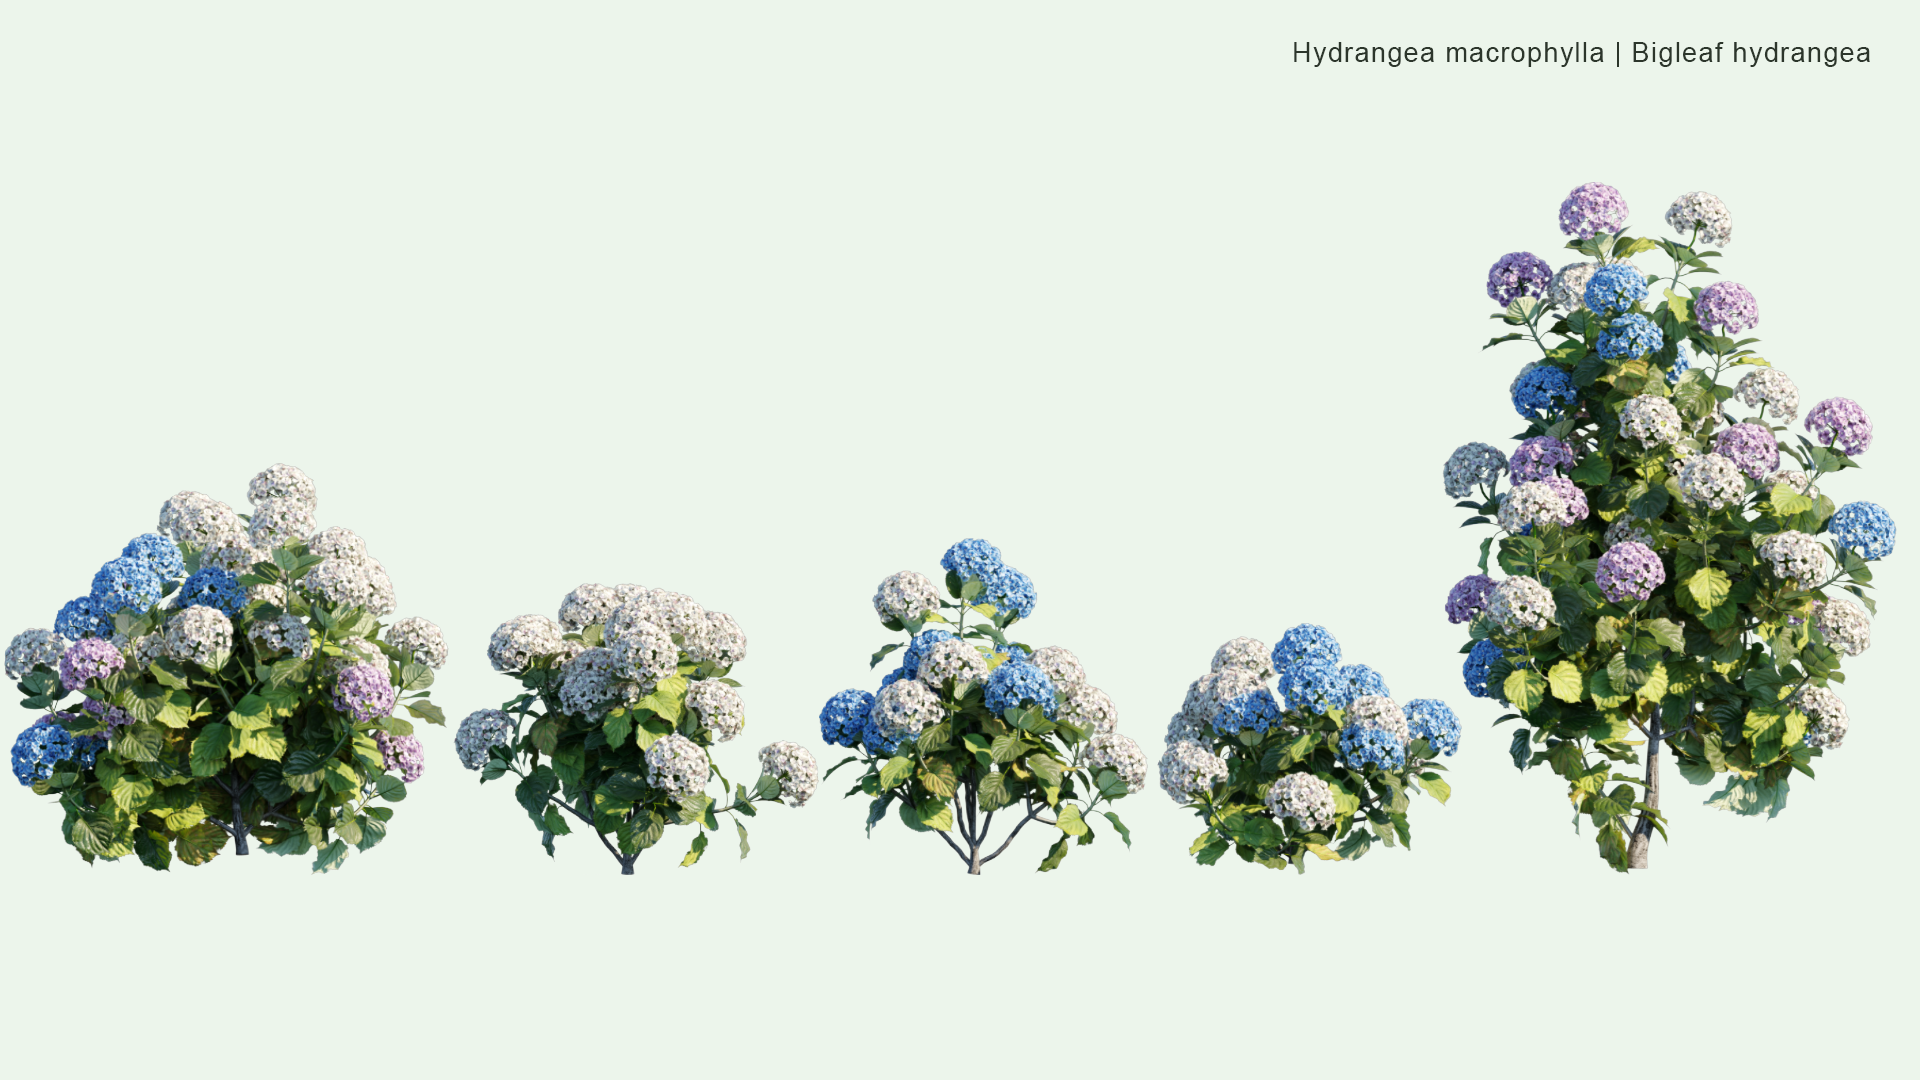 2D Hydrangea Macrophylla - Bigleaf Hydrangea, French Hydrangea, Lacecap Hydrangea, Mophead Hydrangea, Penny Mac, Hortensia